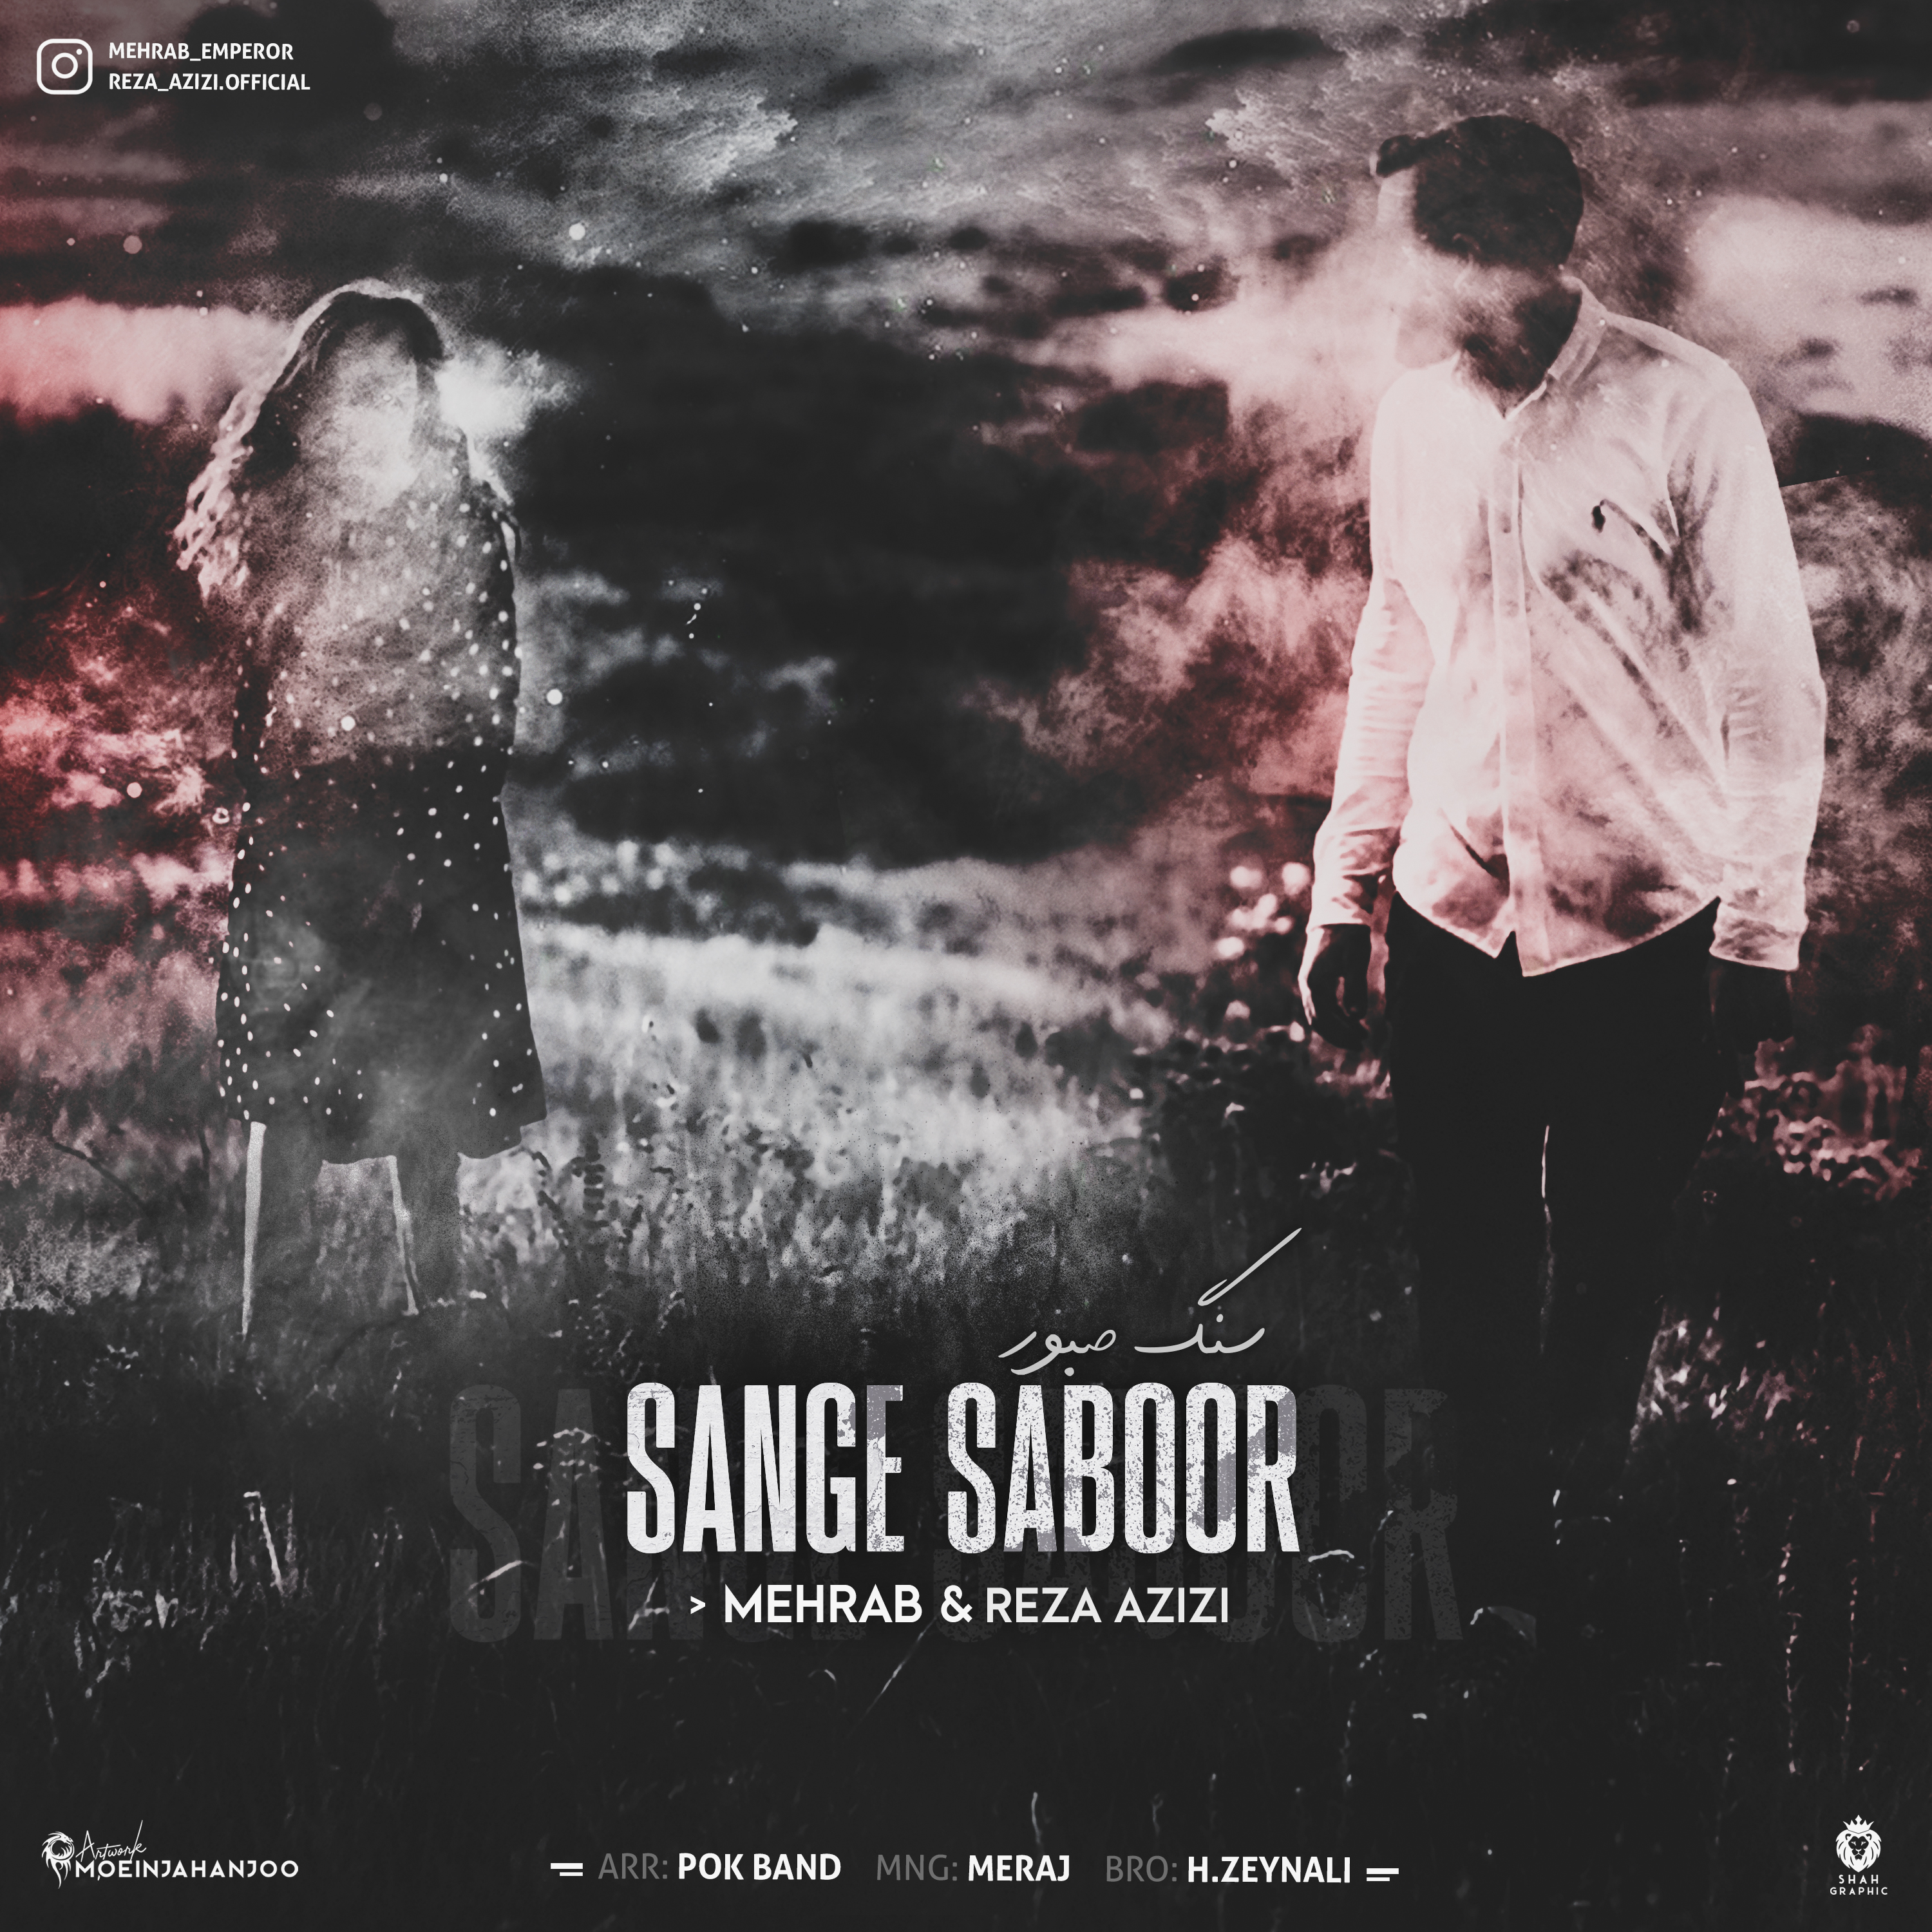  دانلود آهنگ جدید مهراب و رضا عزیزی - سنگ صبور | Download New Music By Mehrab & Reza Azizi - Sange Saboor